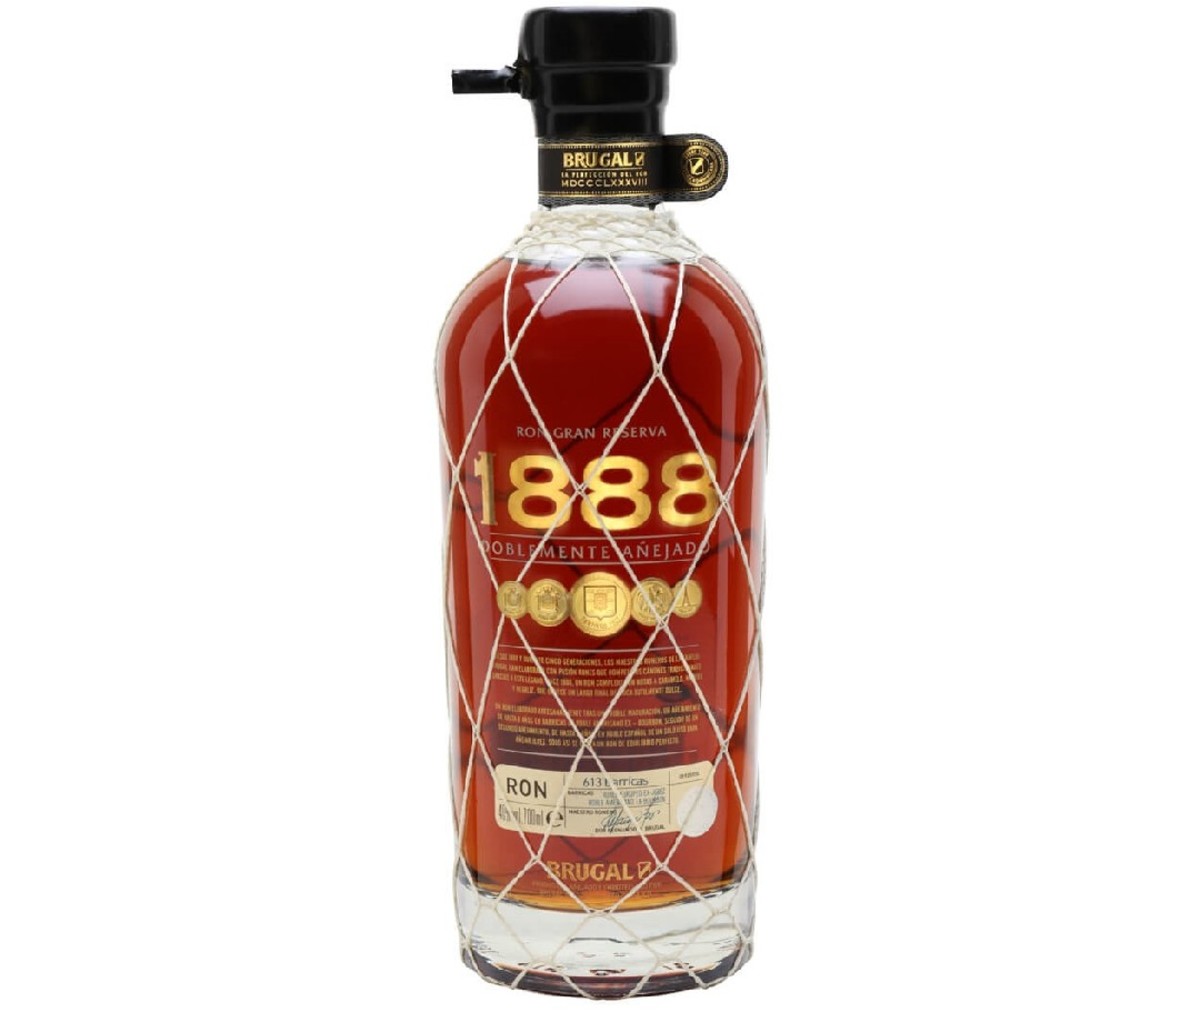 Bottle of Brugal 1888 dark rum